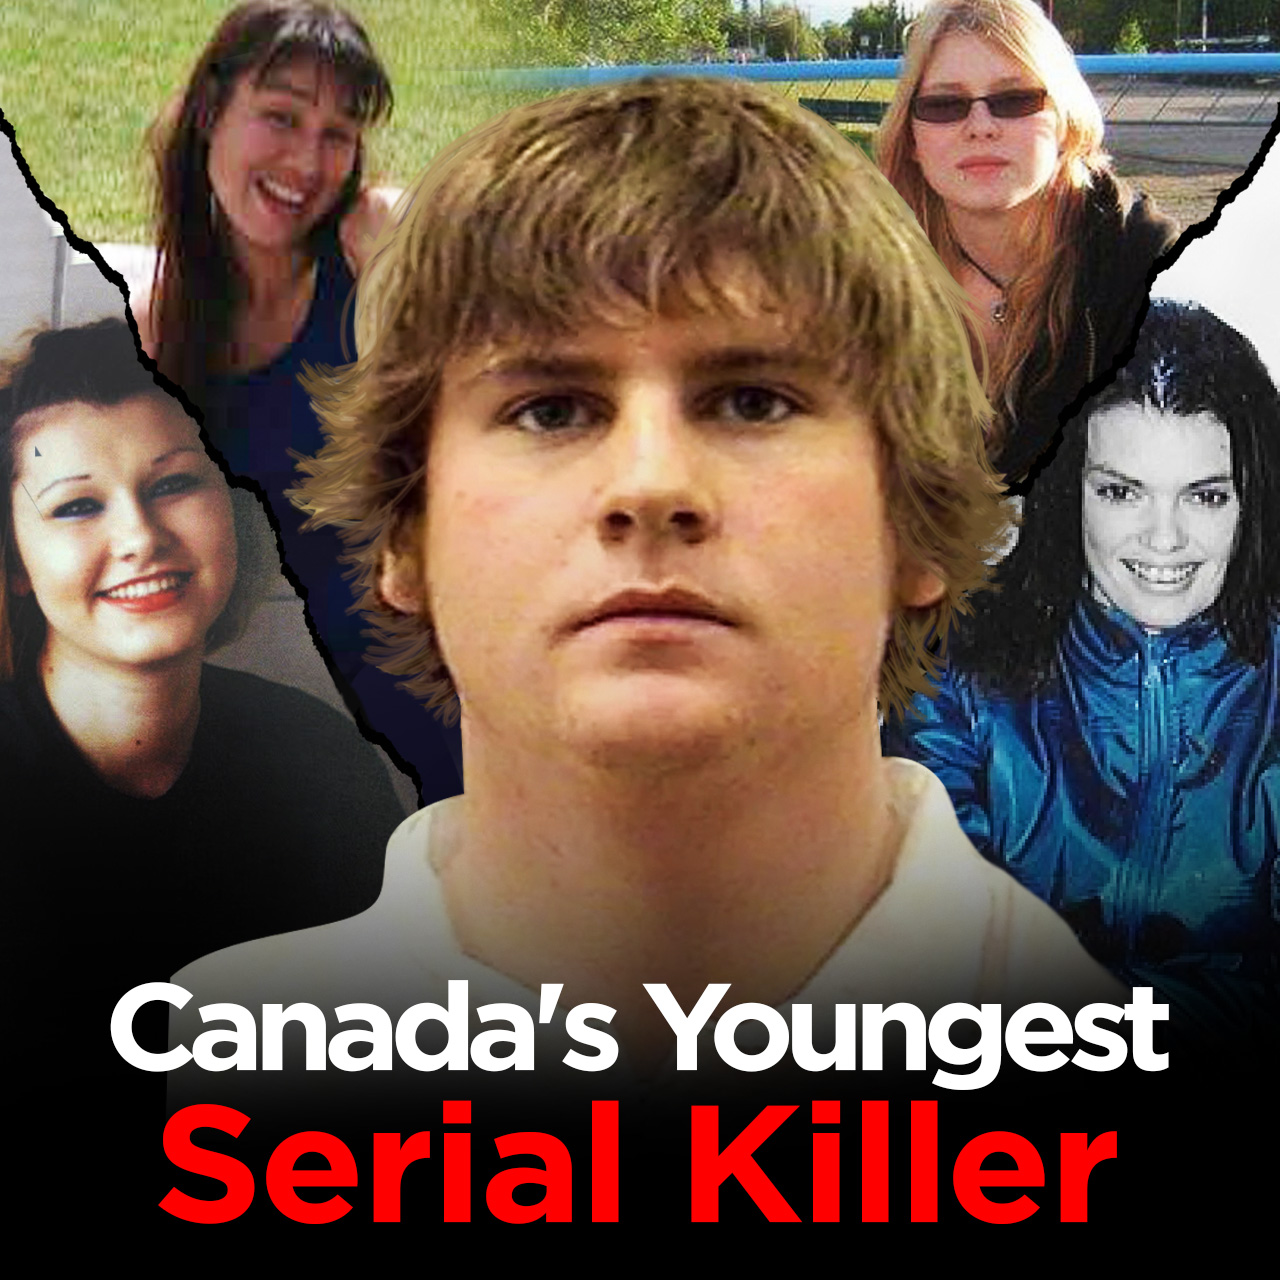 A 25-year-old Serial Killer | Cody Legebokoff